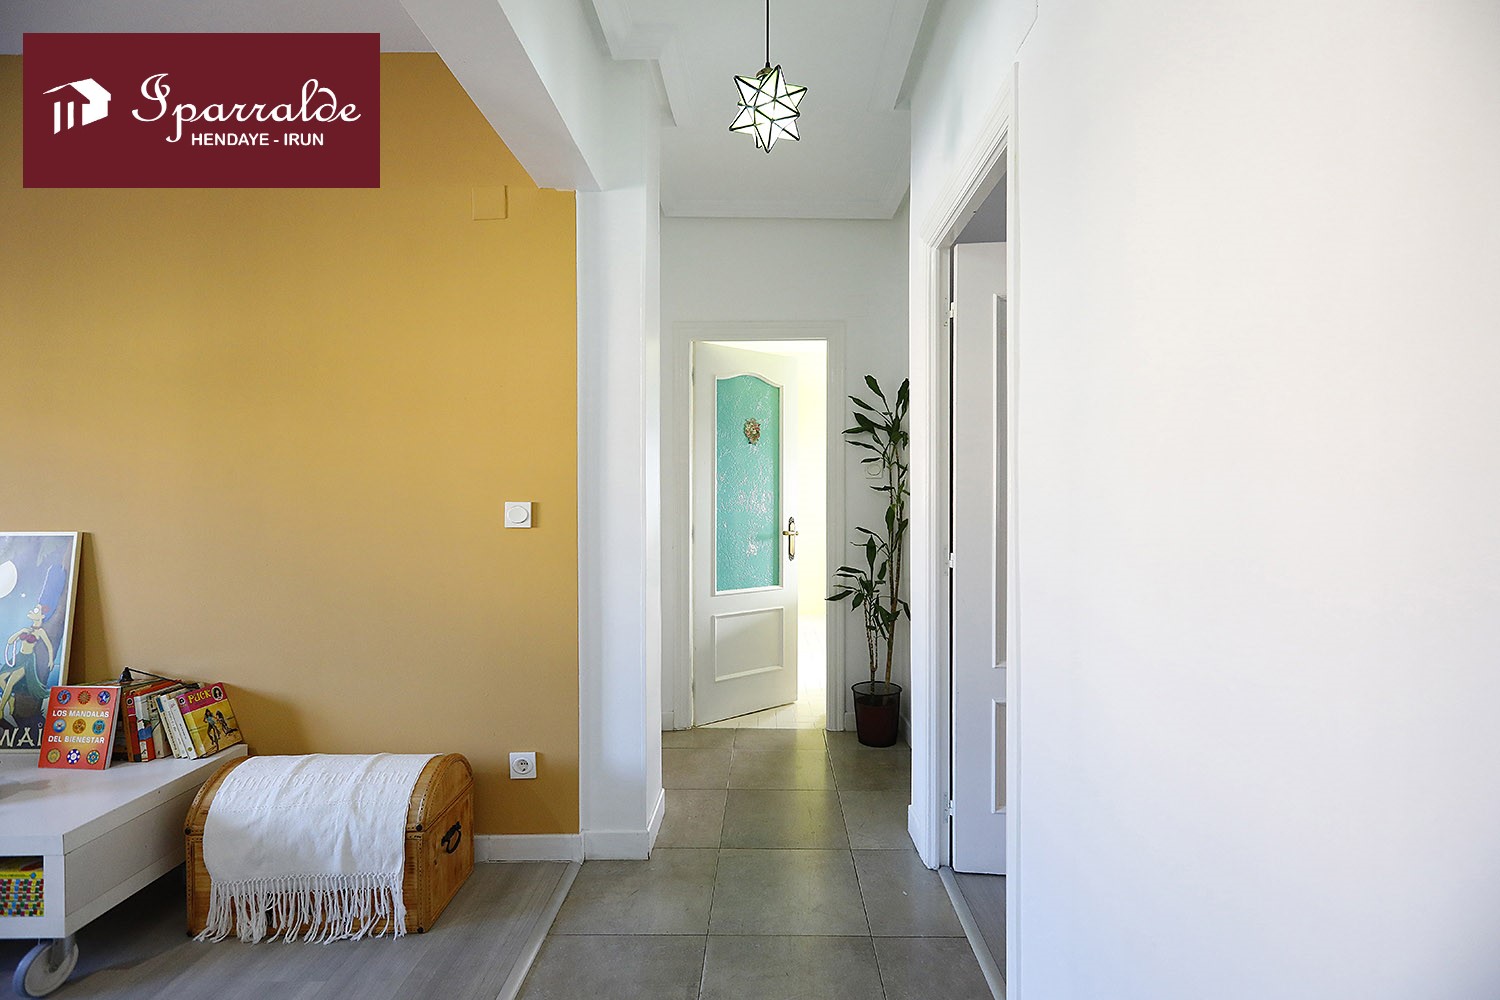 Céntrica y soleada vivienda de dos habitaciones, en zona tranquila de Irún